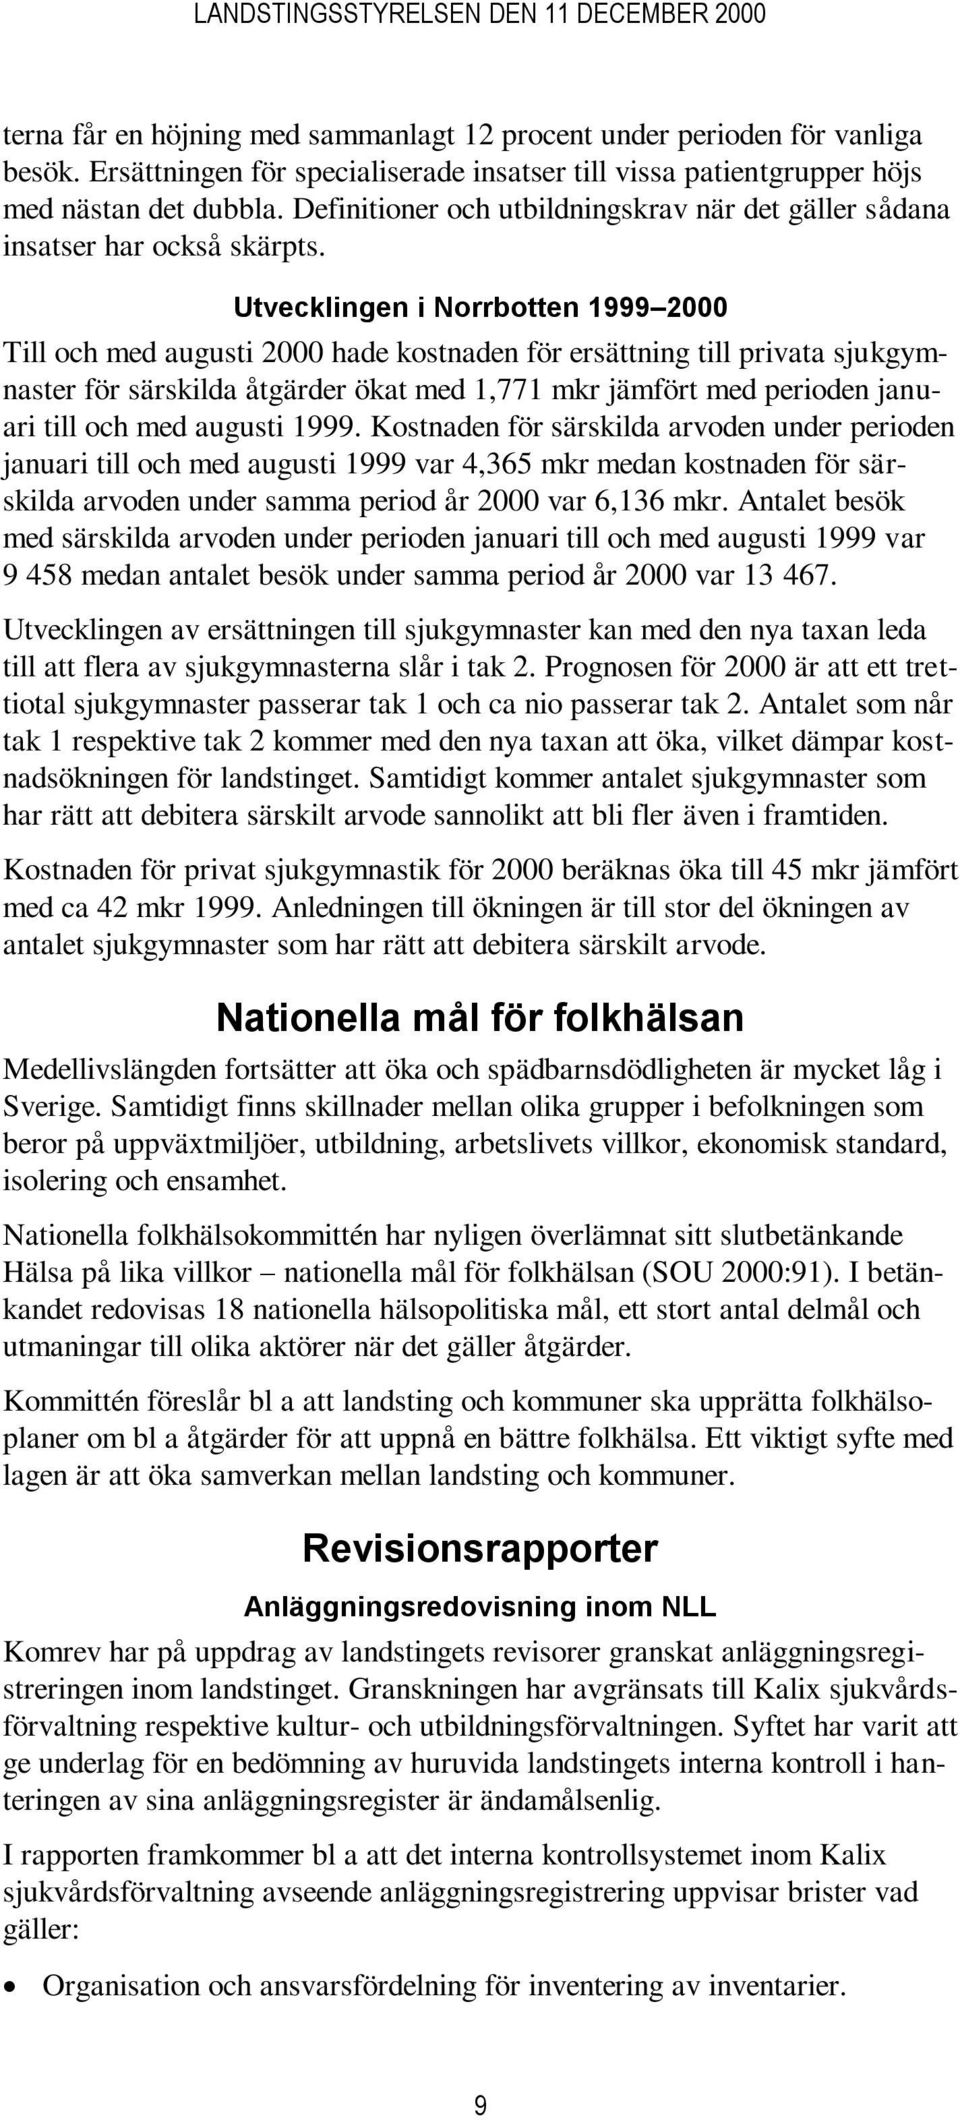 Utvecklingen i Norrbotten 1999 2000 Till och med augusti 2000 hade kostnaden för ersättning till privata sjukgymnaster för särskilda åtgärder ökat med 1,771 mkr jämfört med perioden januari till och